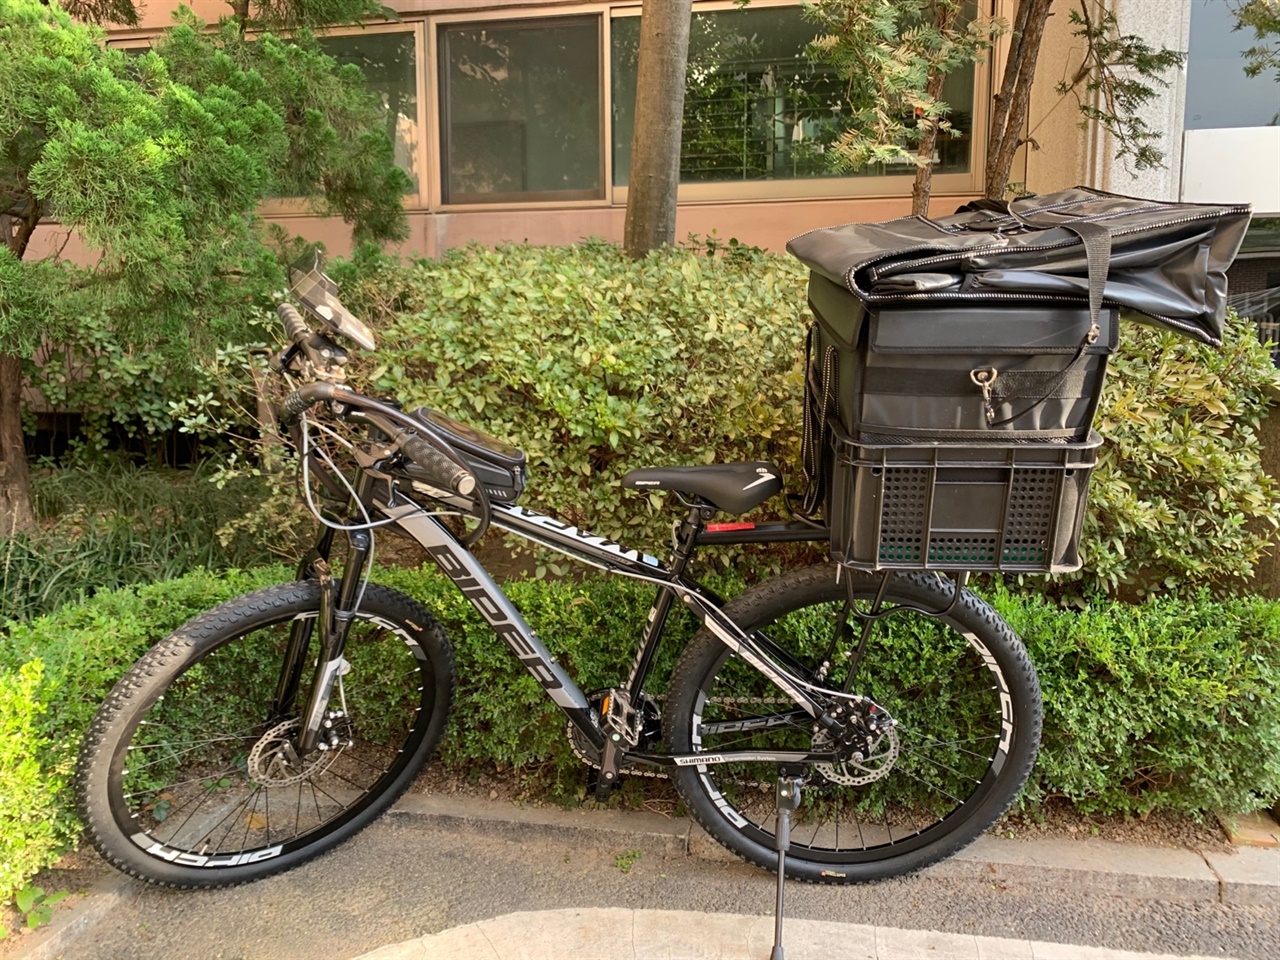 자전거 뒤에 짐받이를 달고 음식 담을 수 있는 배달 가방을 실었다. 